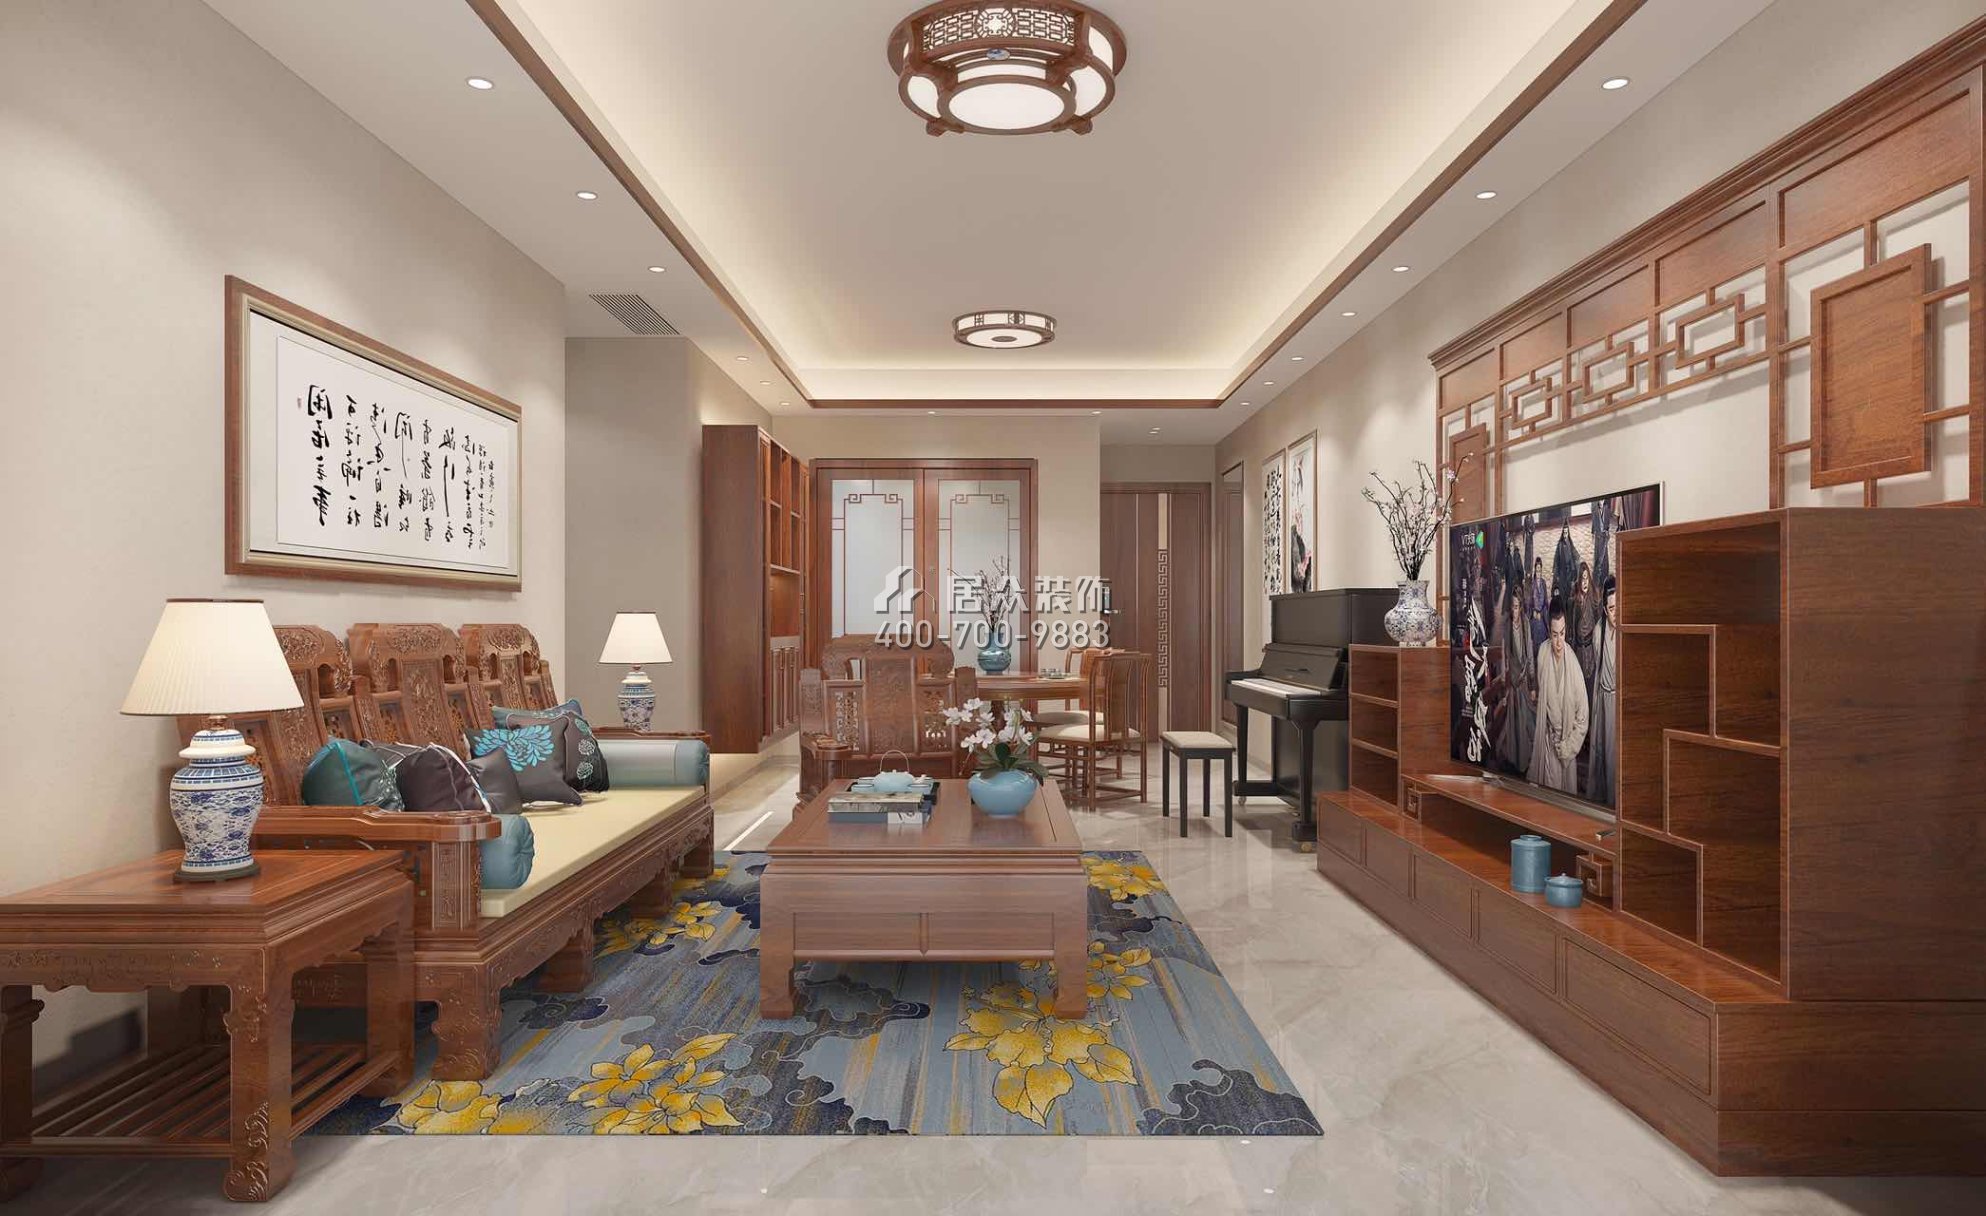 蔚蓝海岸三期93平方米中式风格平层户型客厅装修效果图